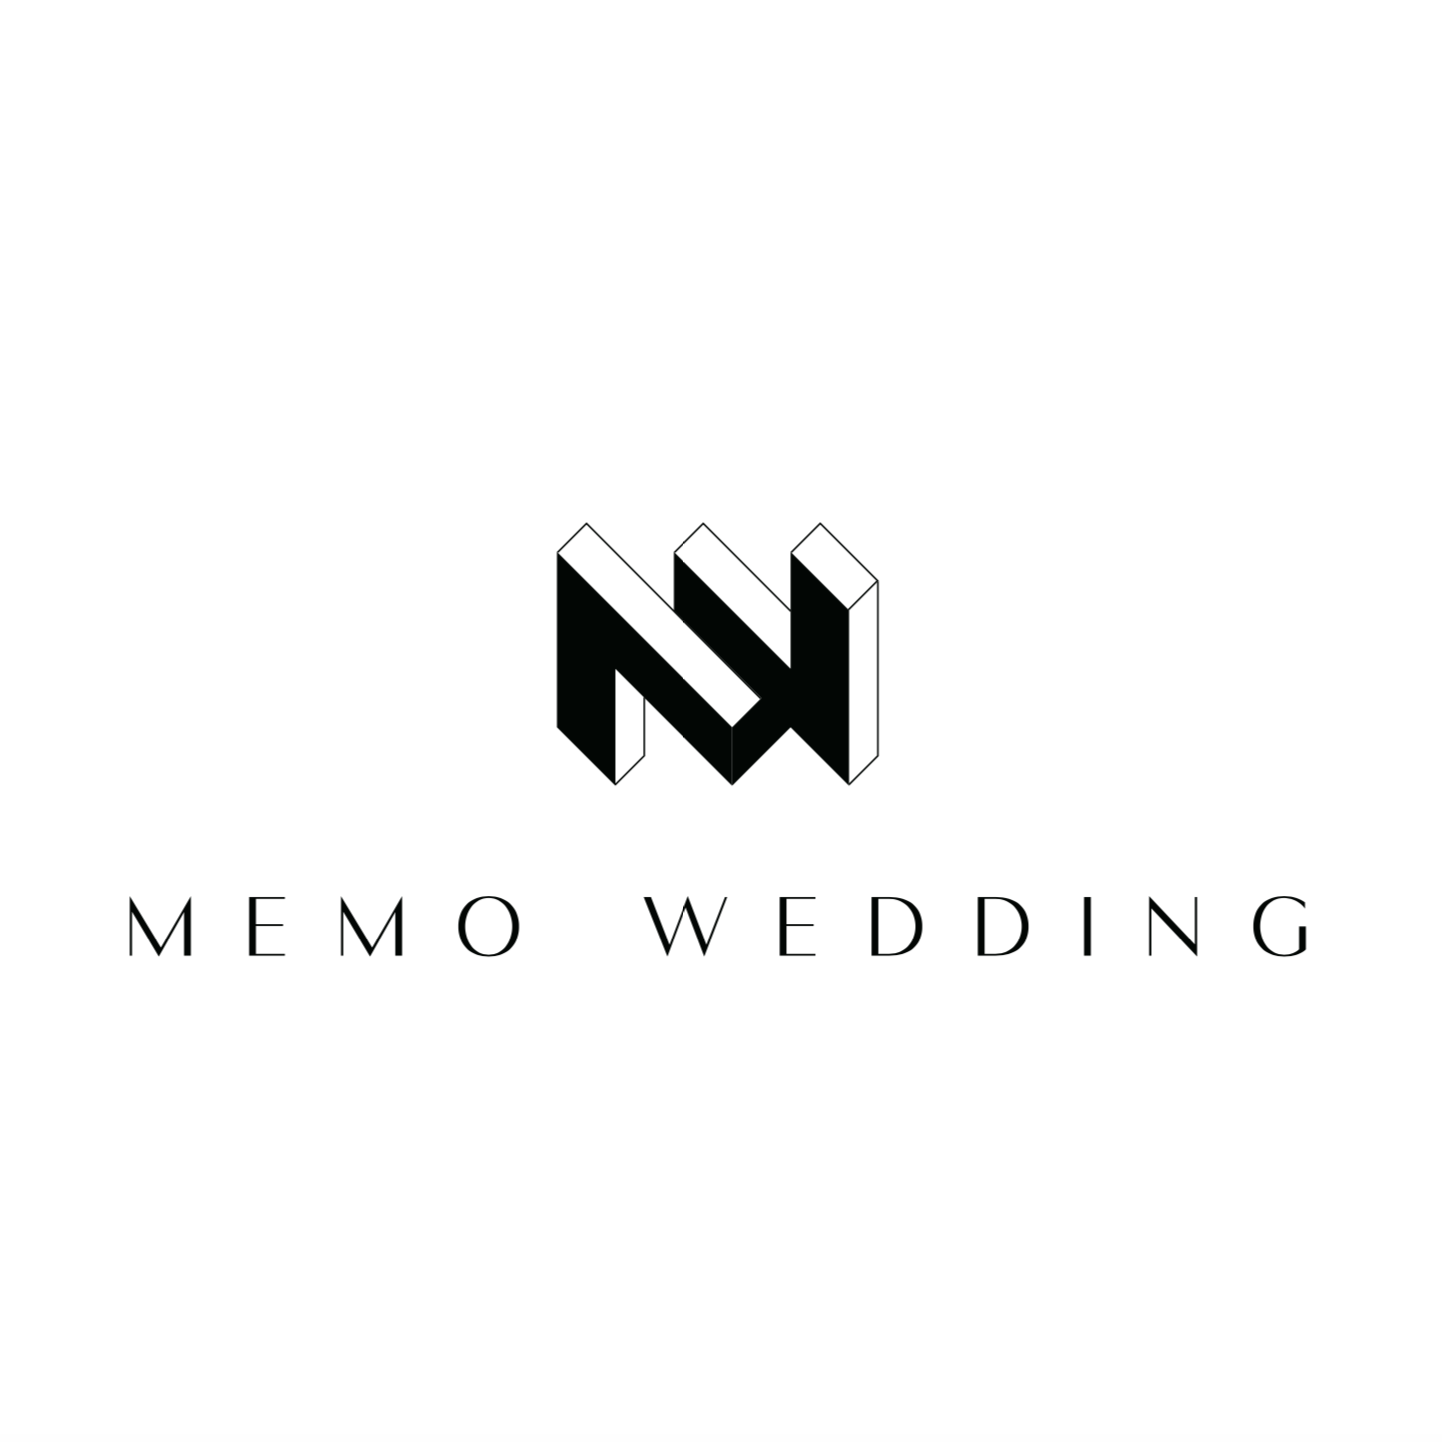 MEMO婚礼企划